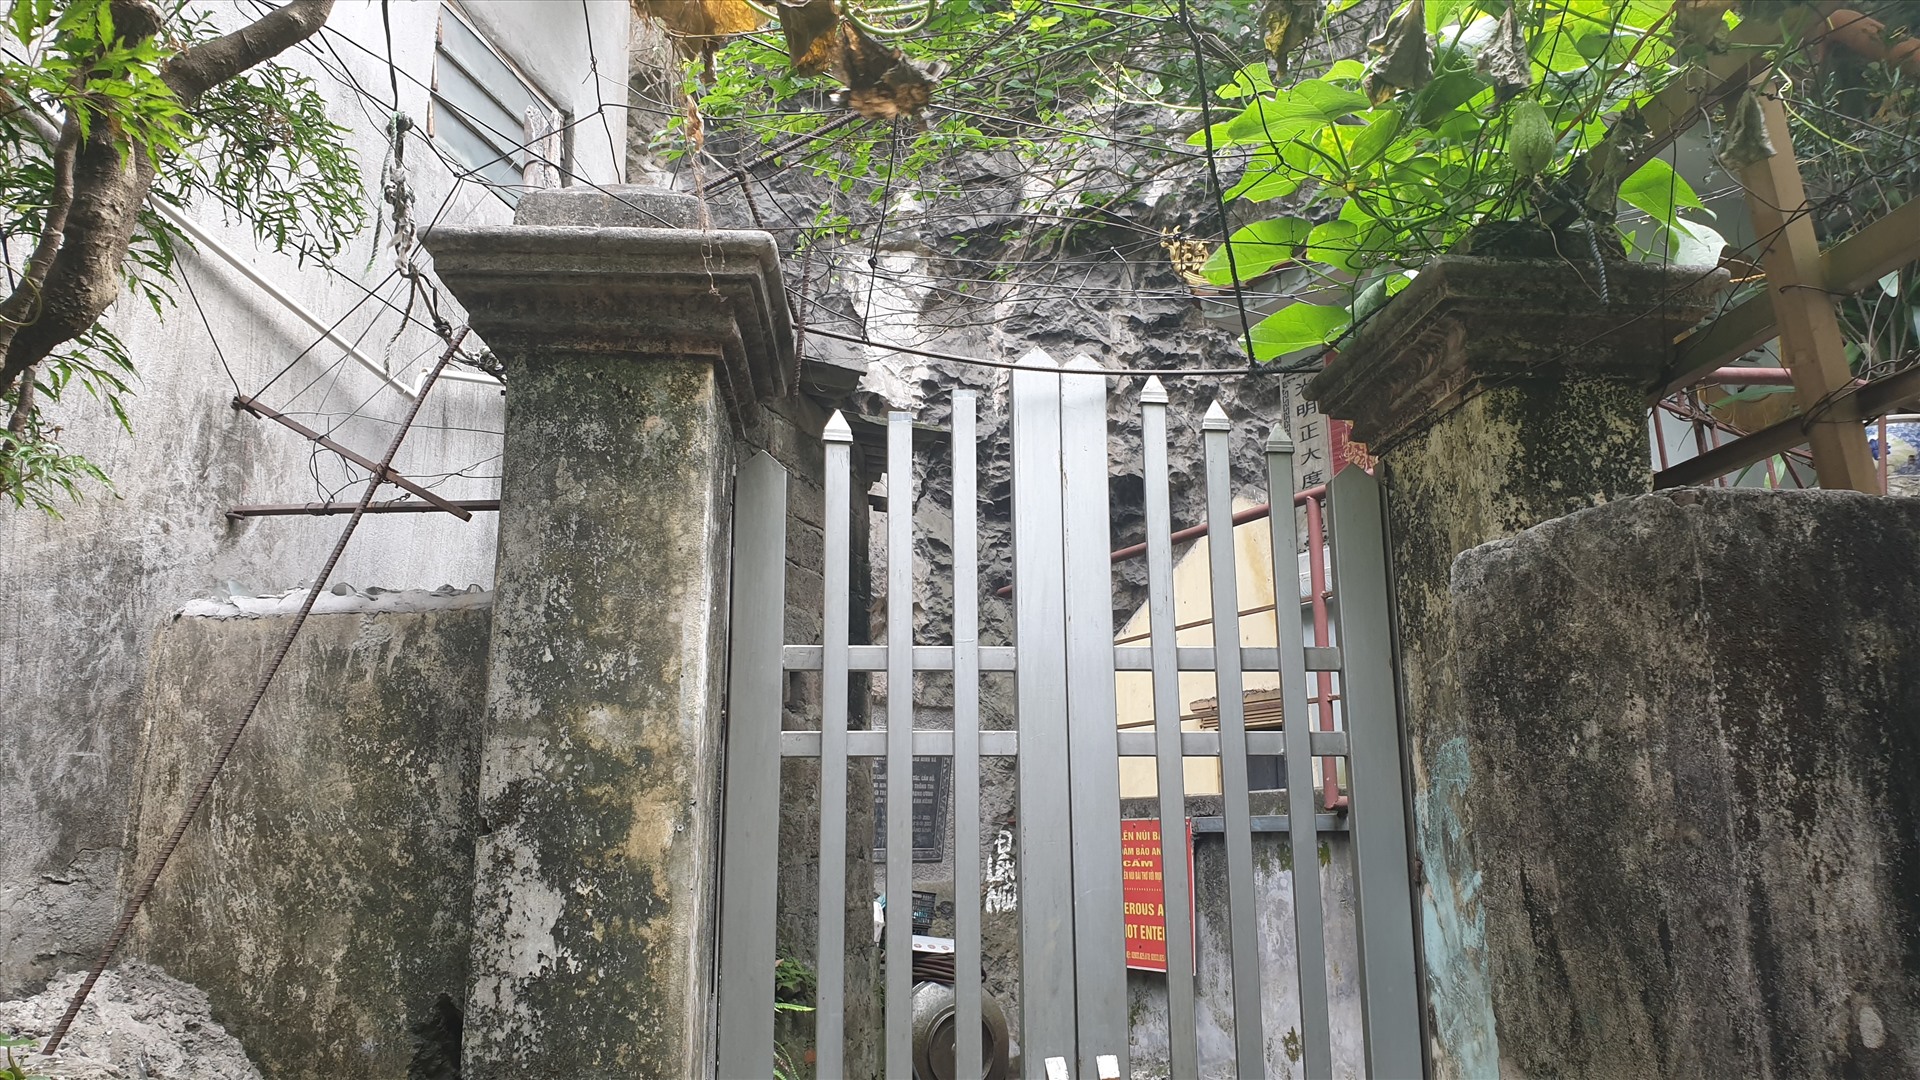 Cổng chính lên núi Bài Thơ đã bị khóa lại từ sau vụ cháy tháng 11.2017. Ảnh: Nguyễn Hùng